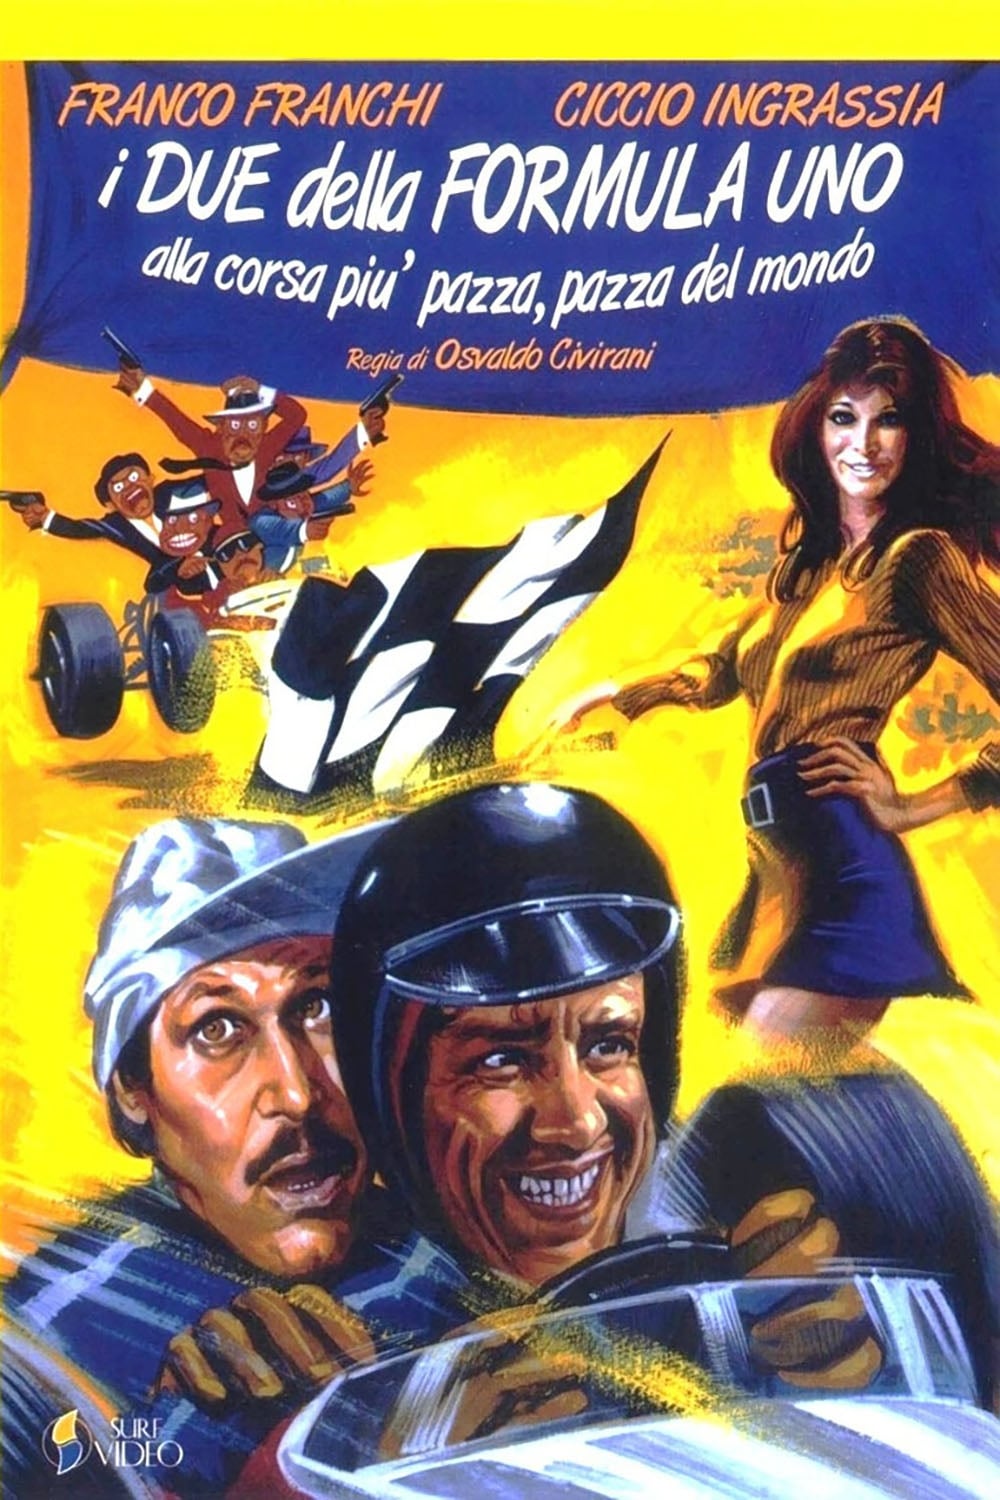 I due della F. 1 alla corsa più pazza, pazza del mondo (1971)